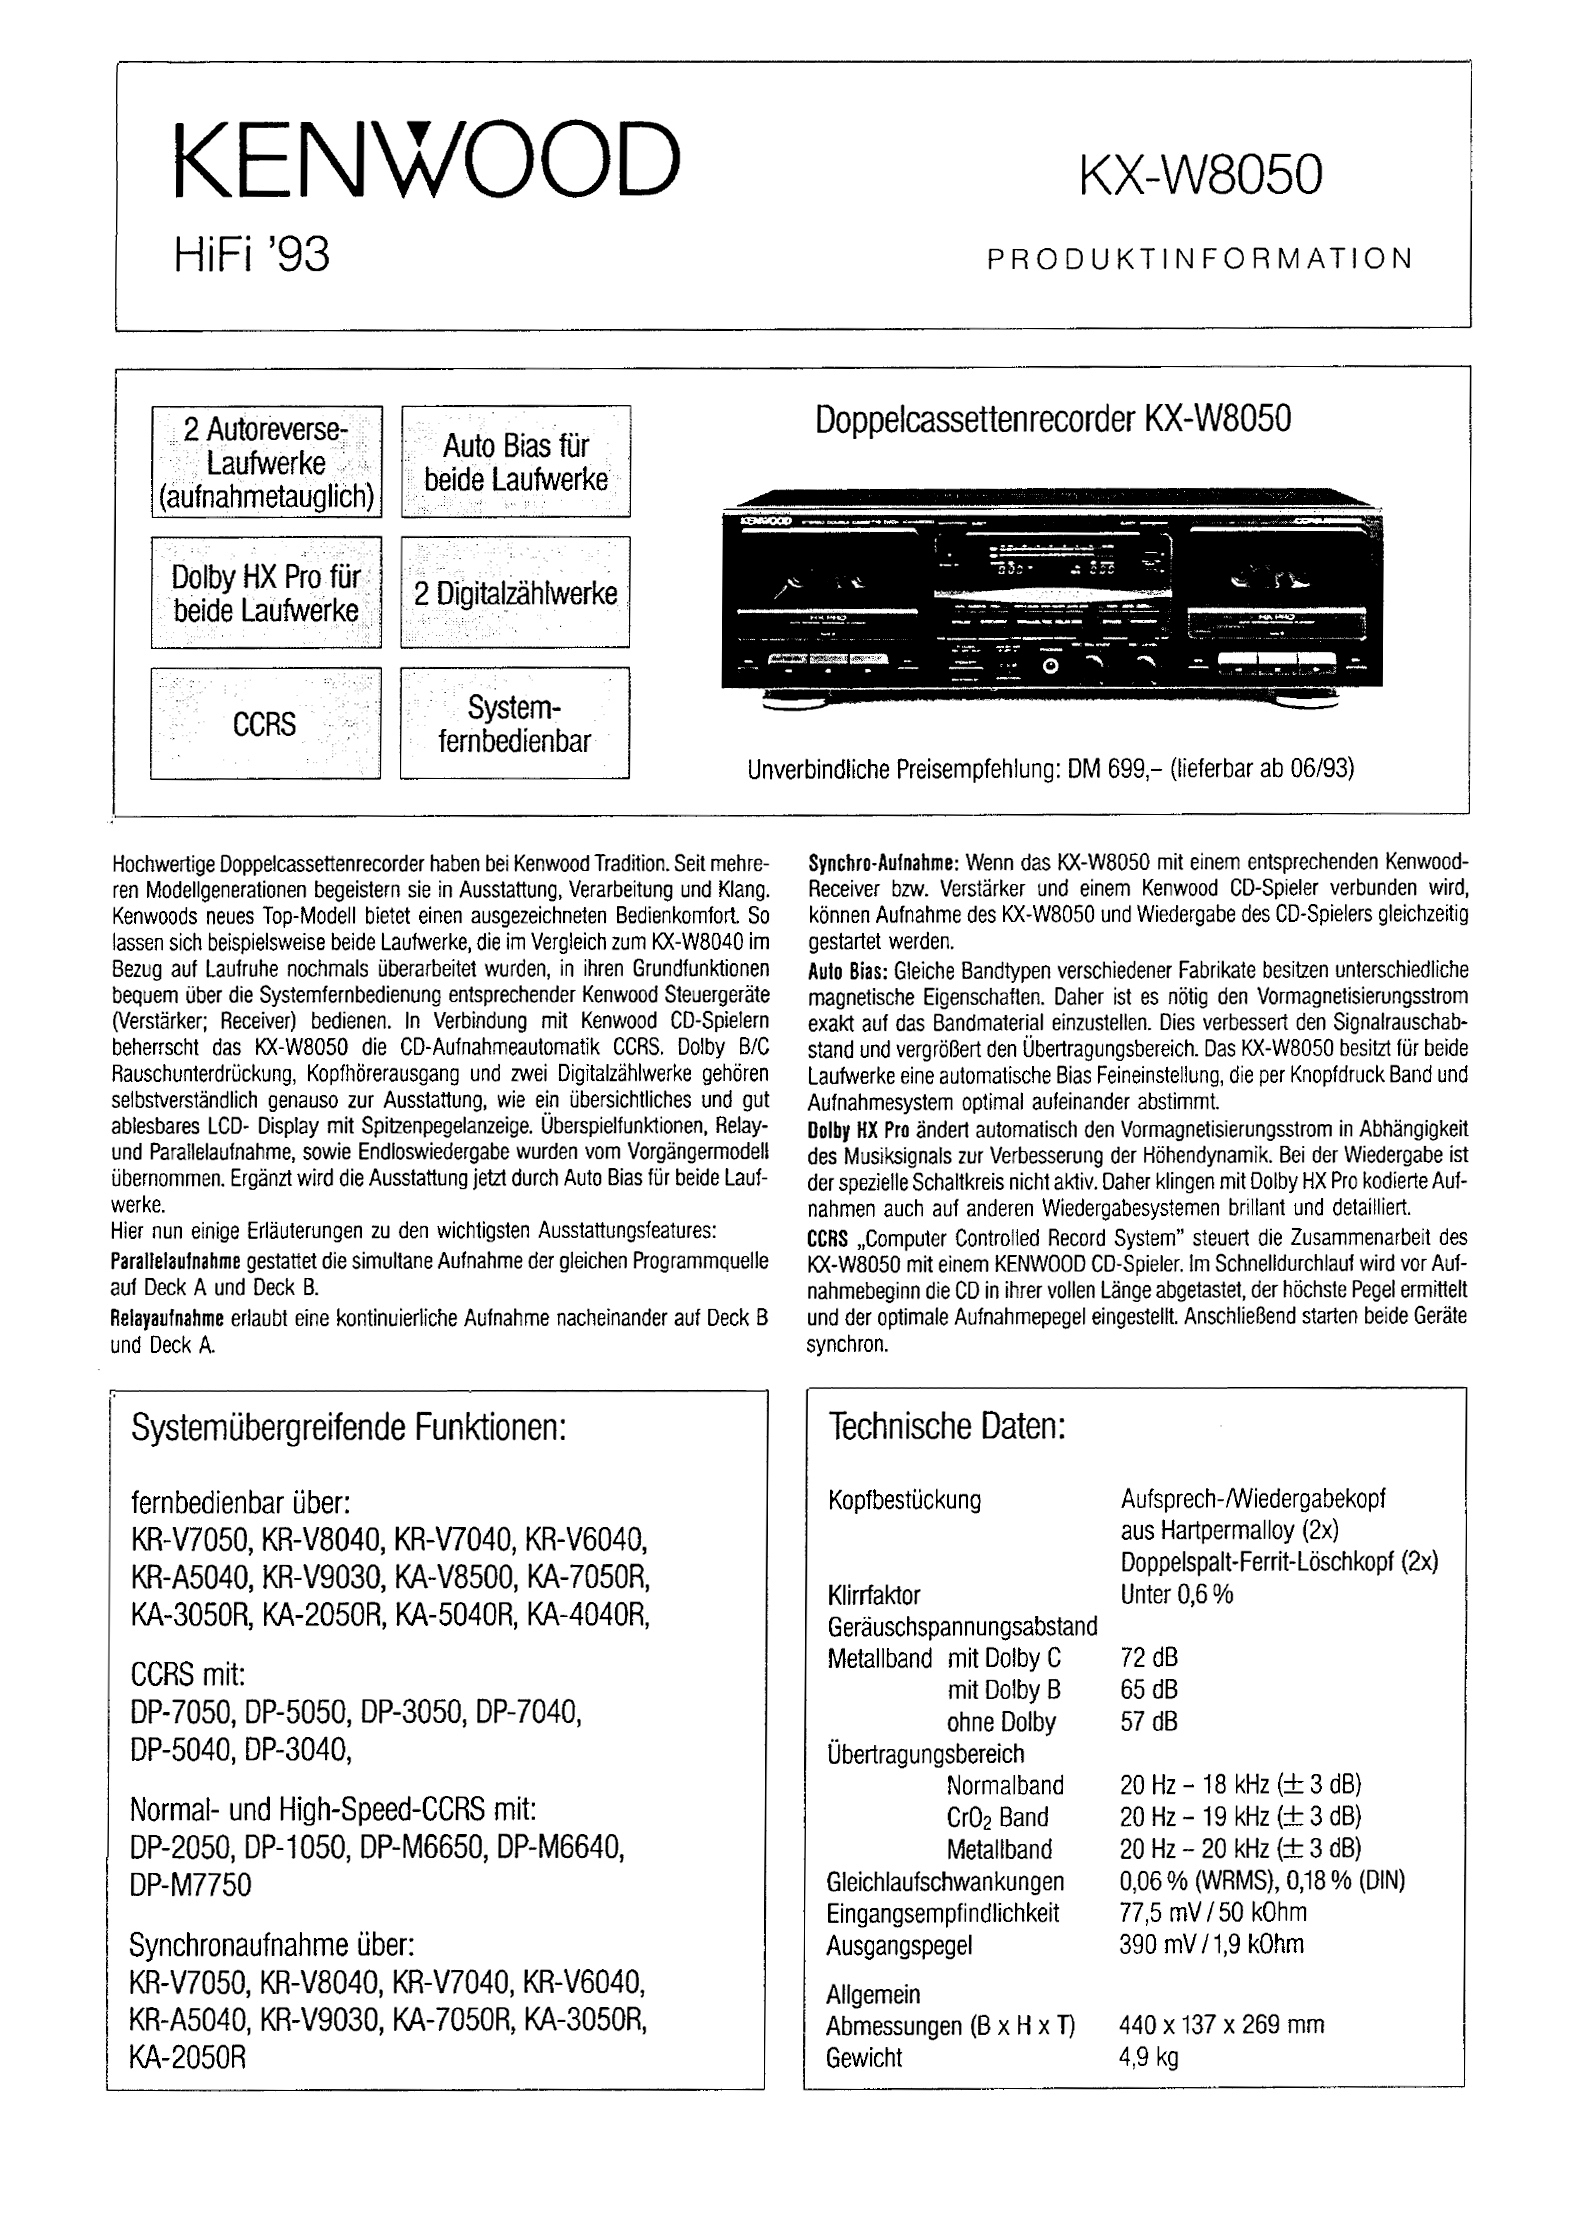 Kenwood KX-W 8050-Prospekt-1993.jpg